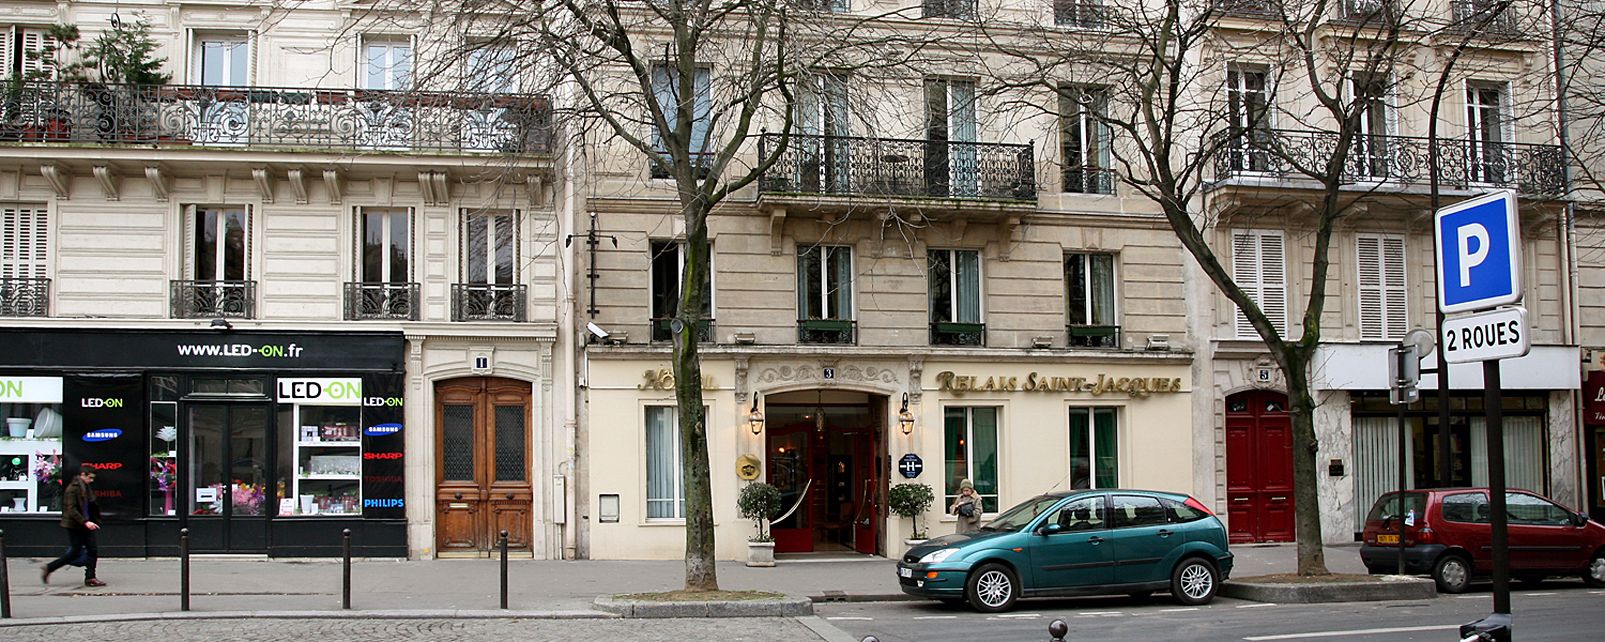 Hotel Relais Saint-Jacques